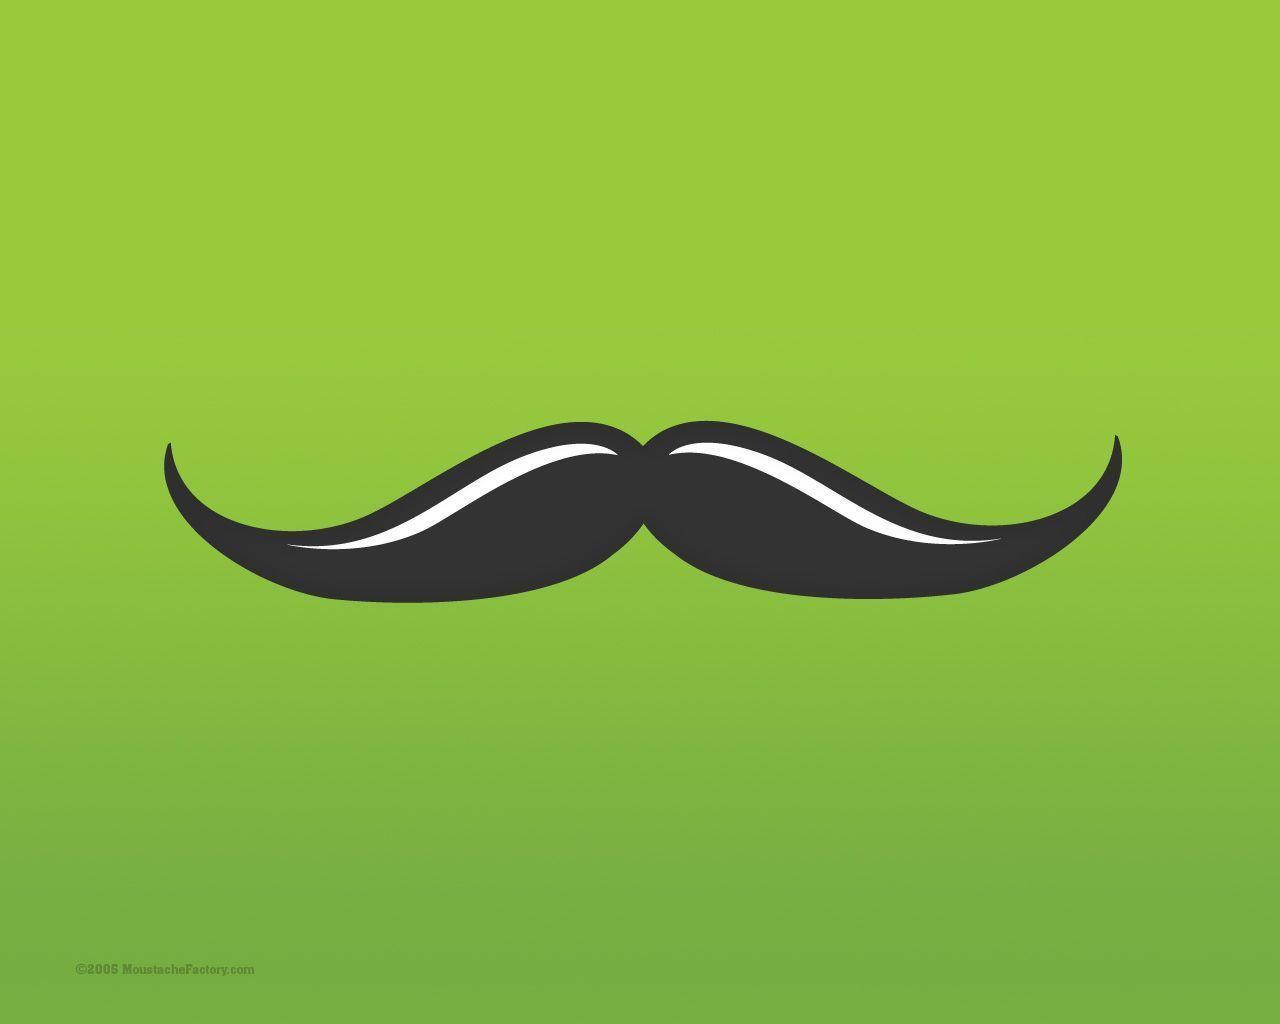 Wallpaper For > Mustache Wallpaper For Desktop